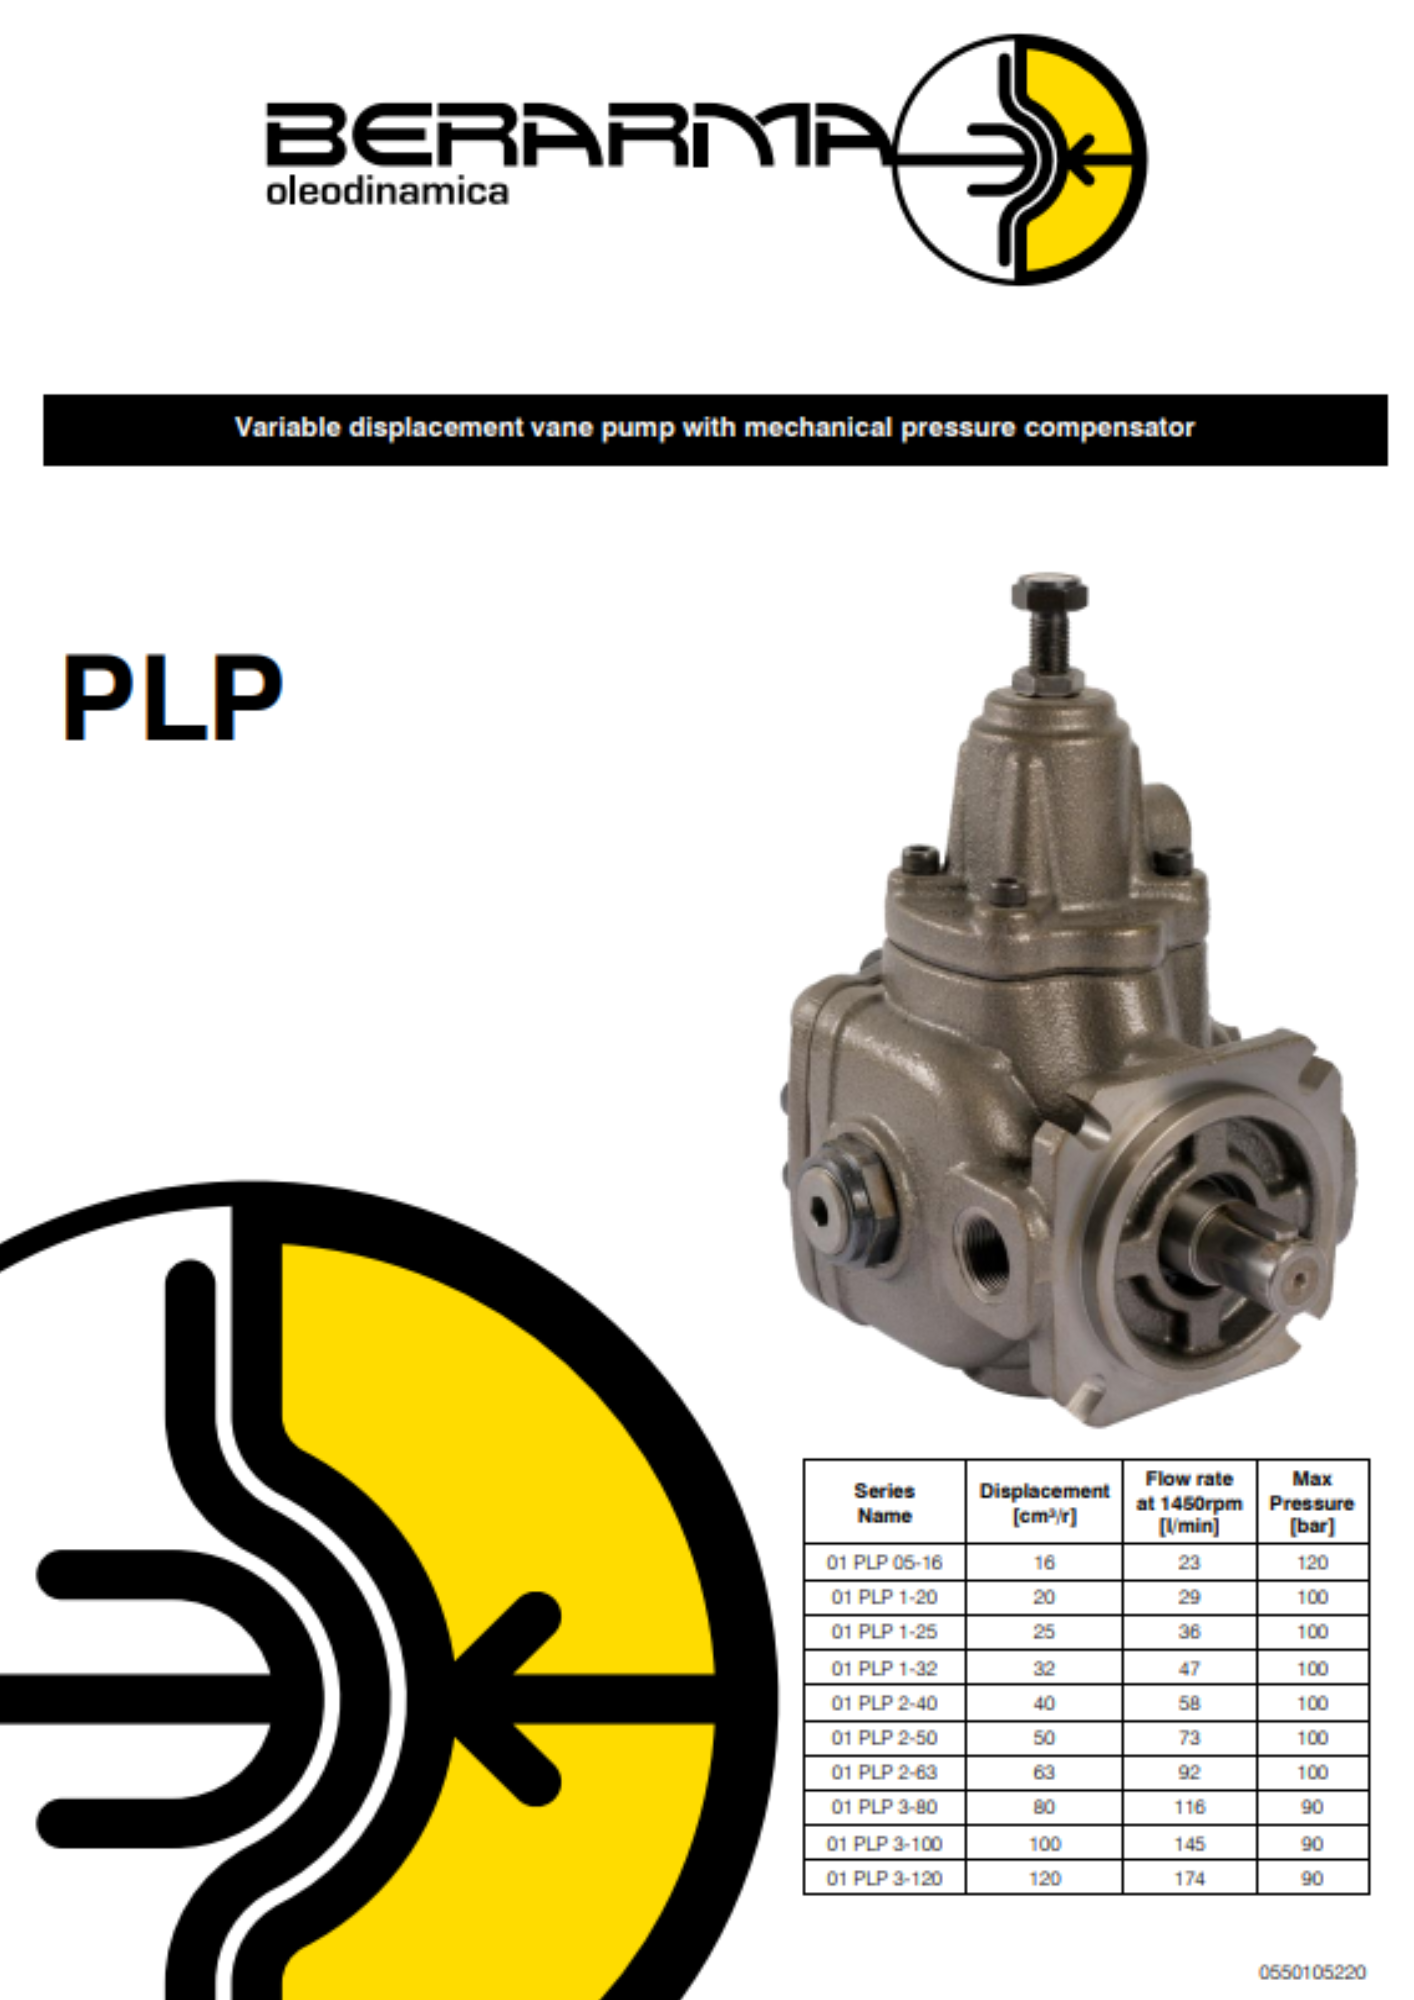 Berarma: PLP variable displacement vane pumps